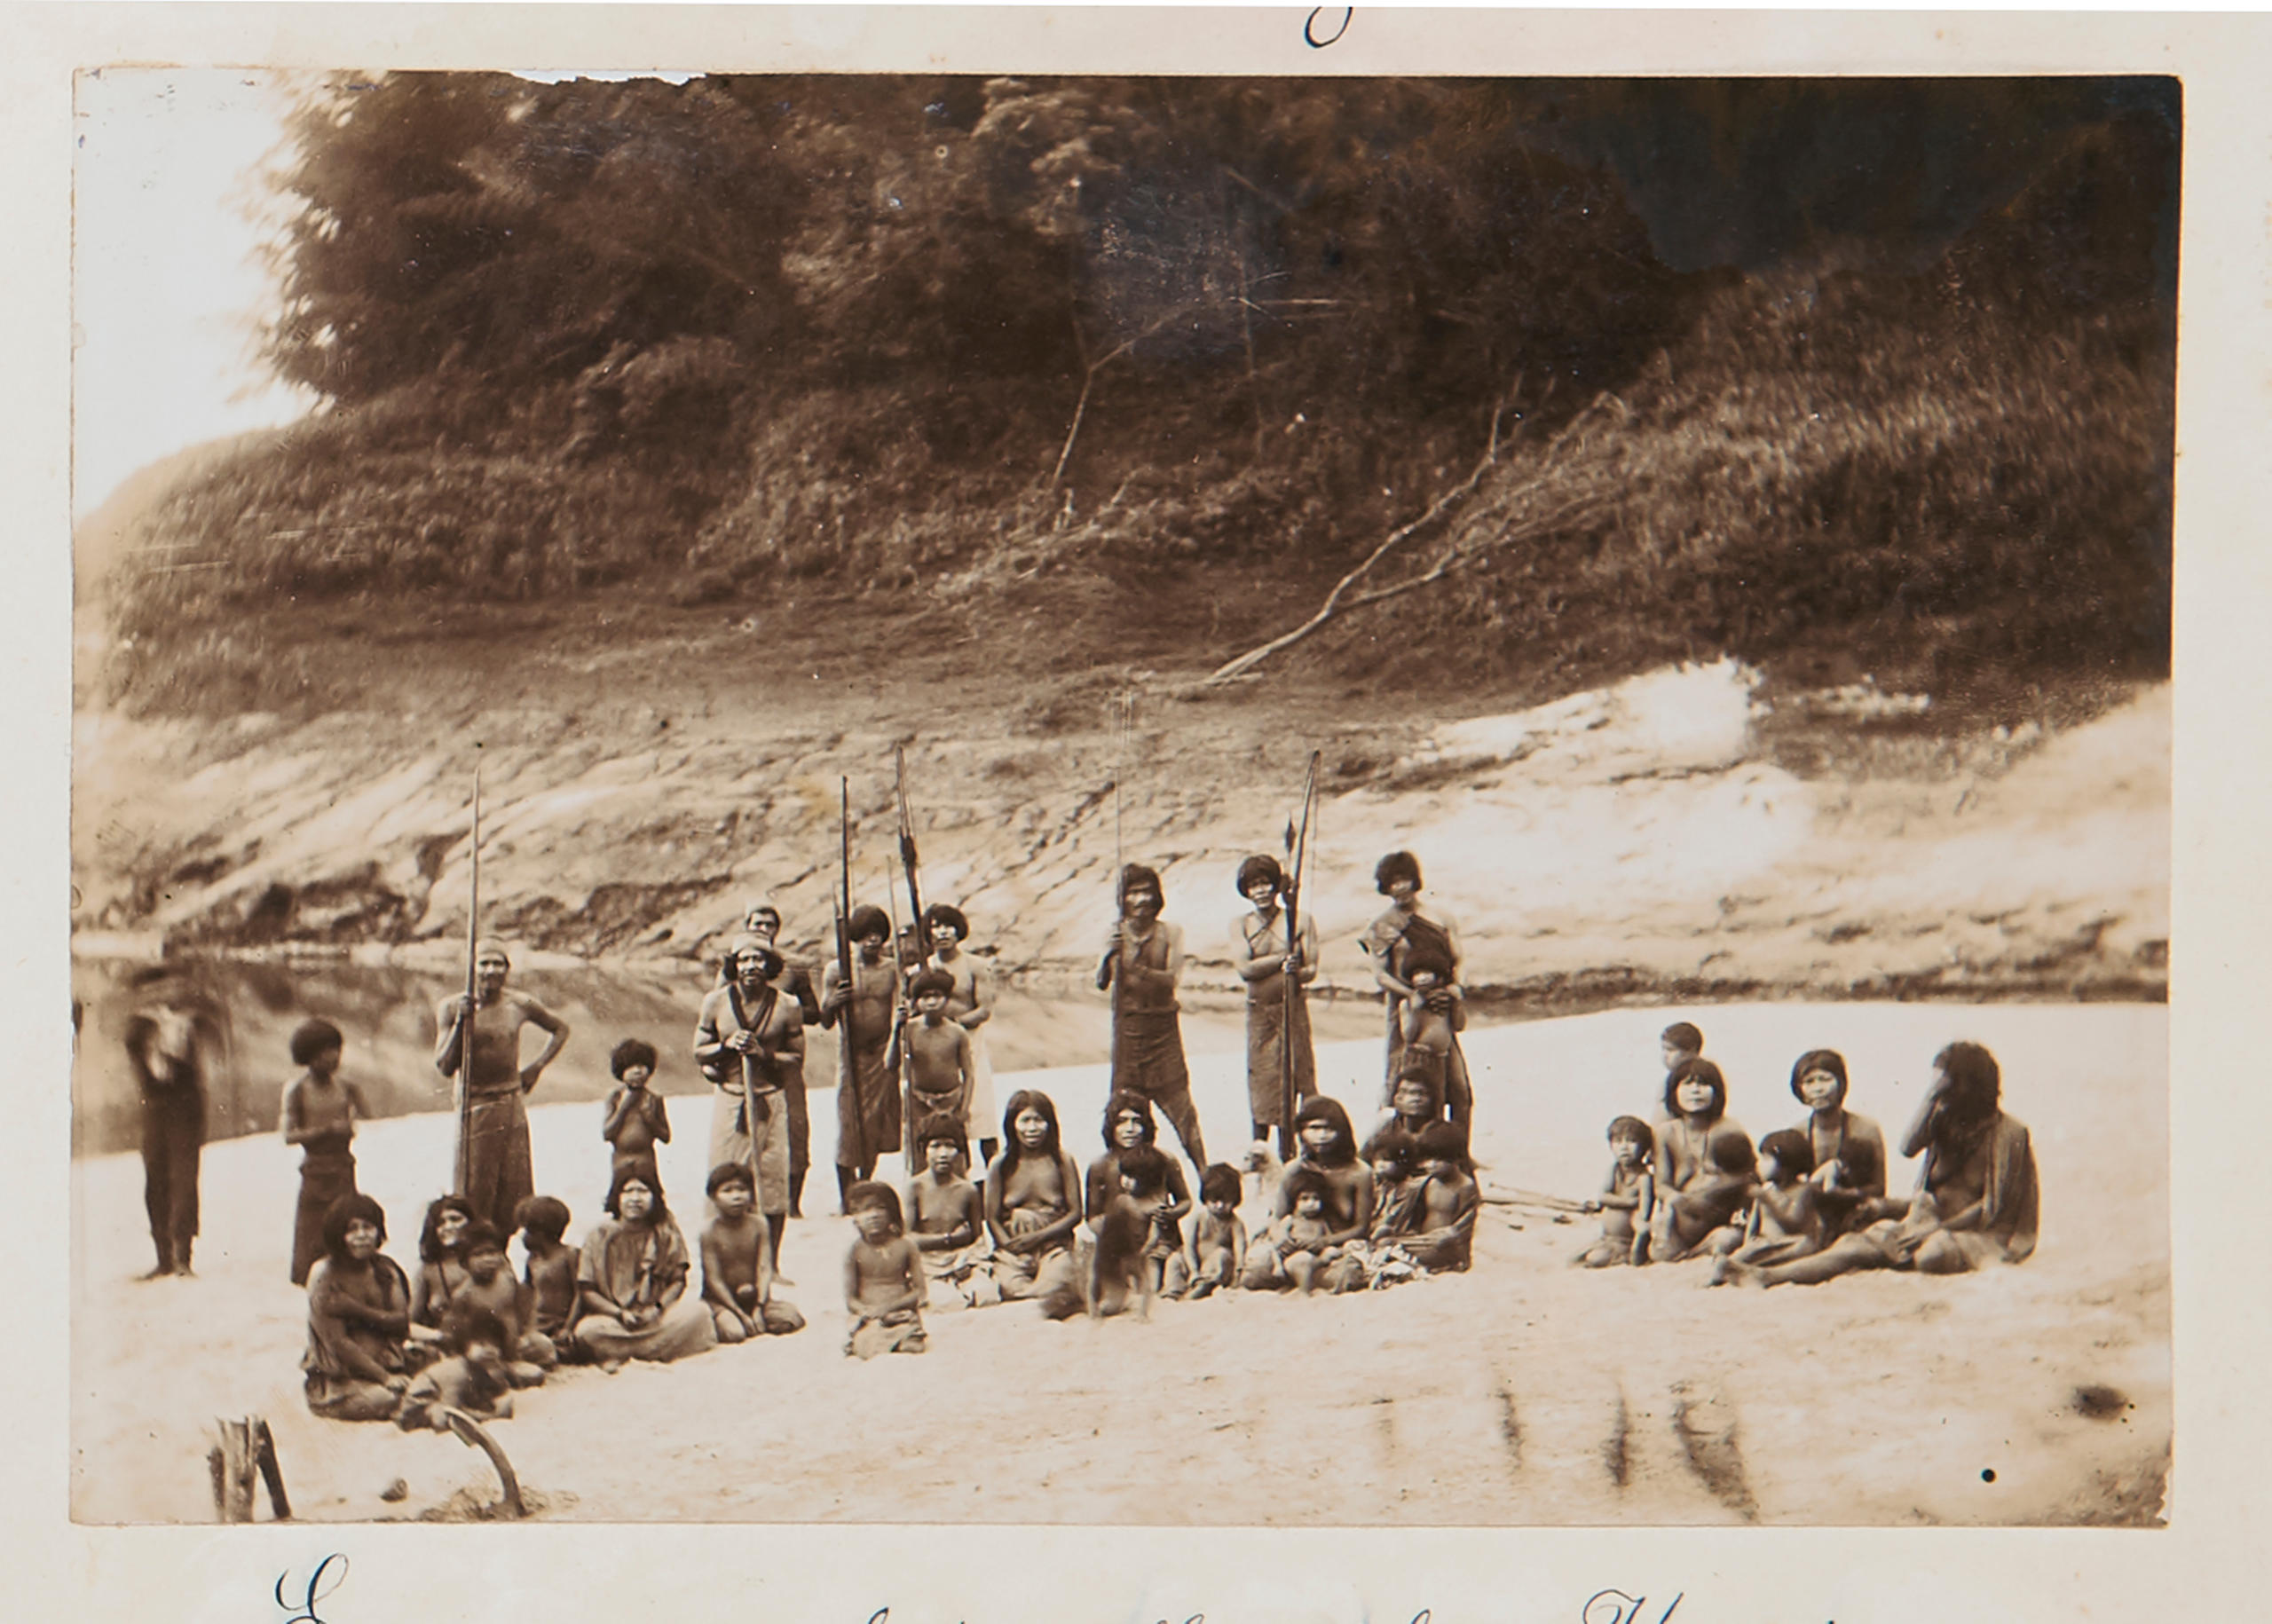 Altes Bild von einer Gruppe von Menschen mit Speeren in den Händen an einem Strand.